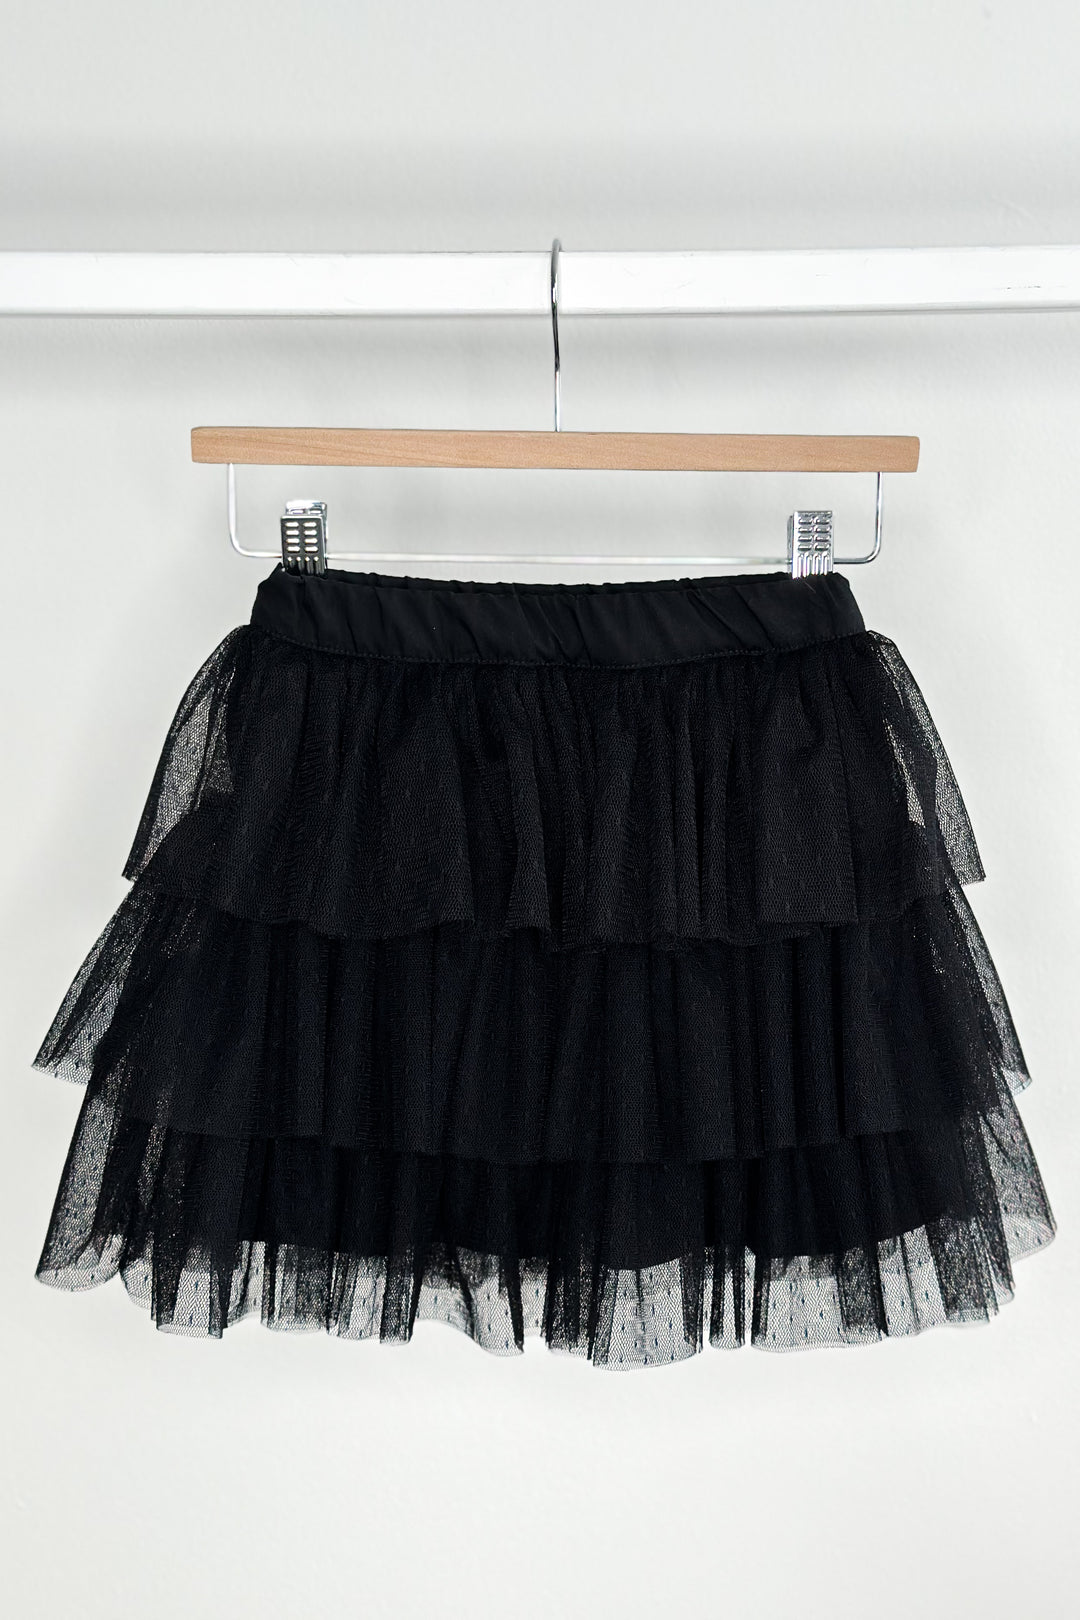 Phi "Allegra" Black Tulle Skirt | Millie and John